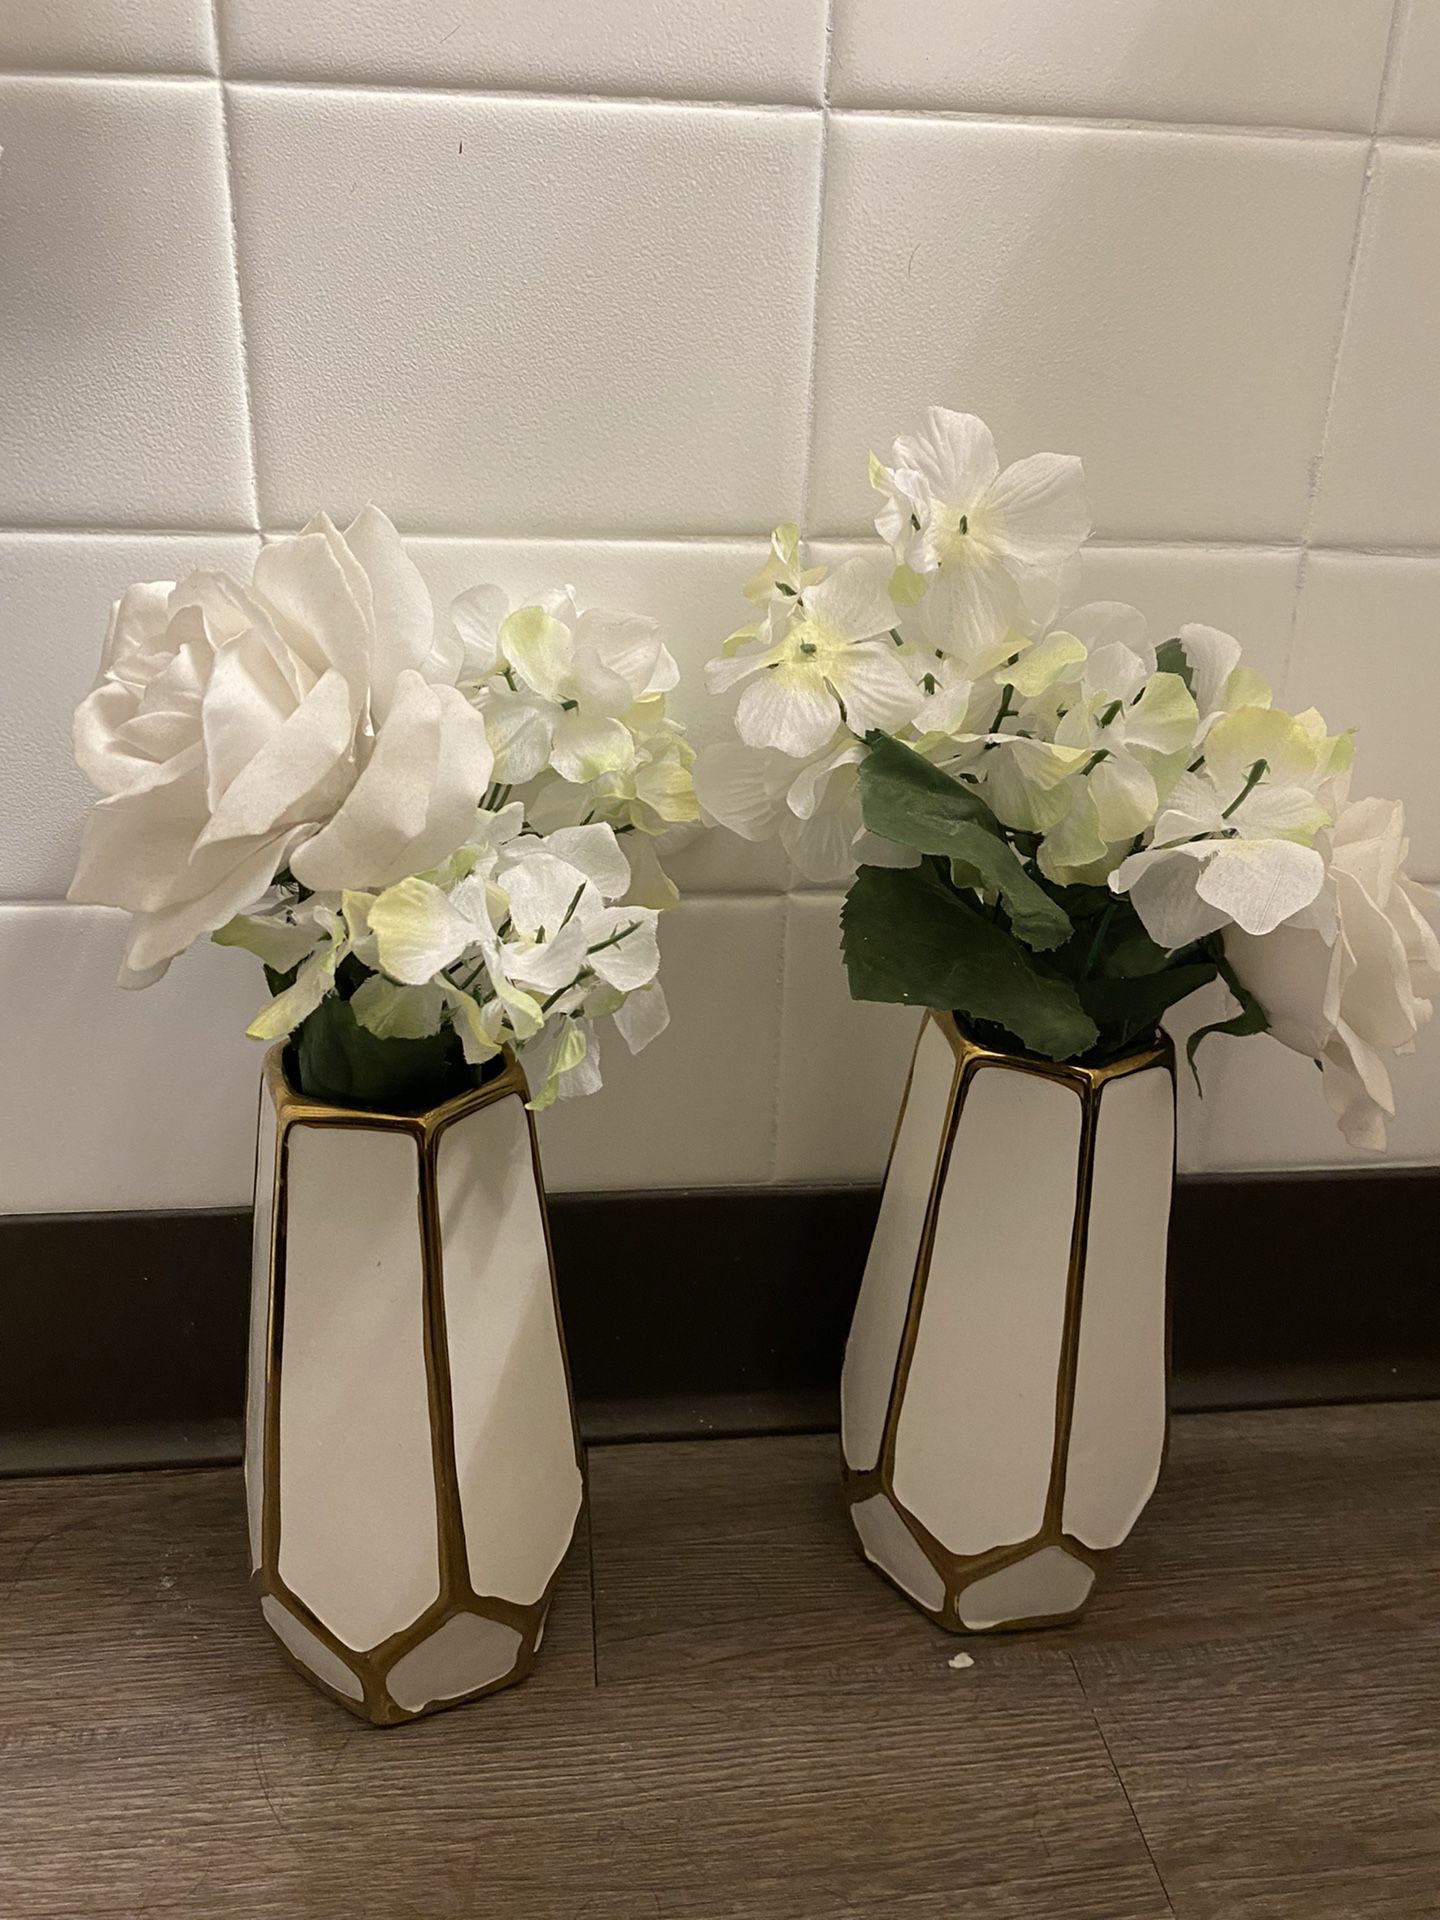 2 Flower vases